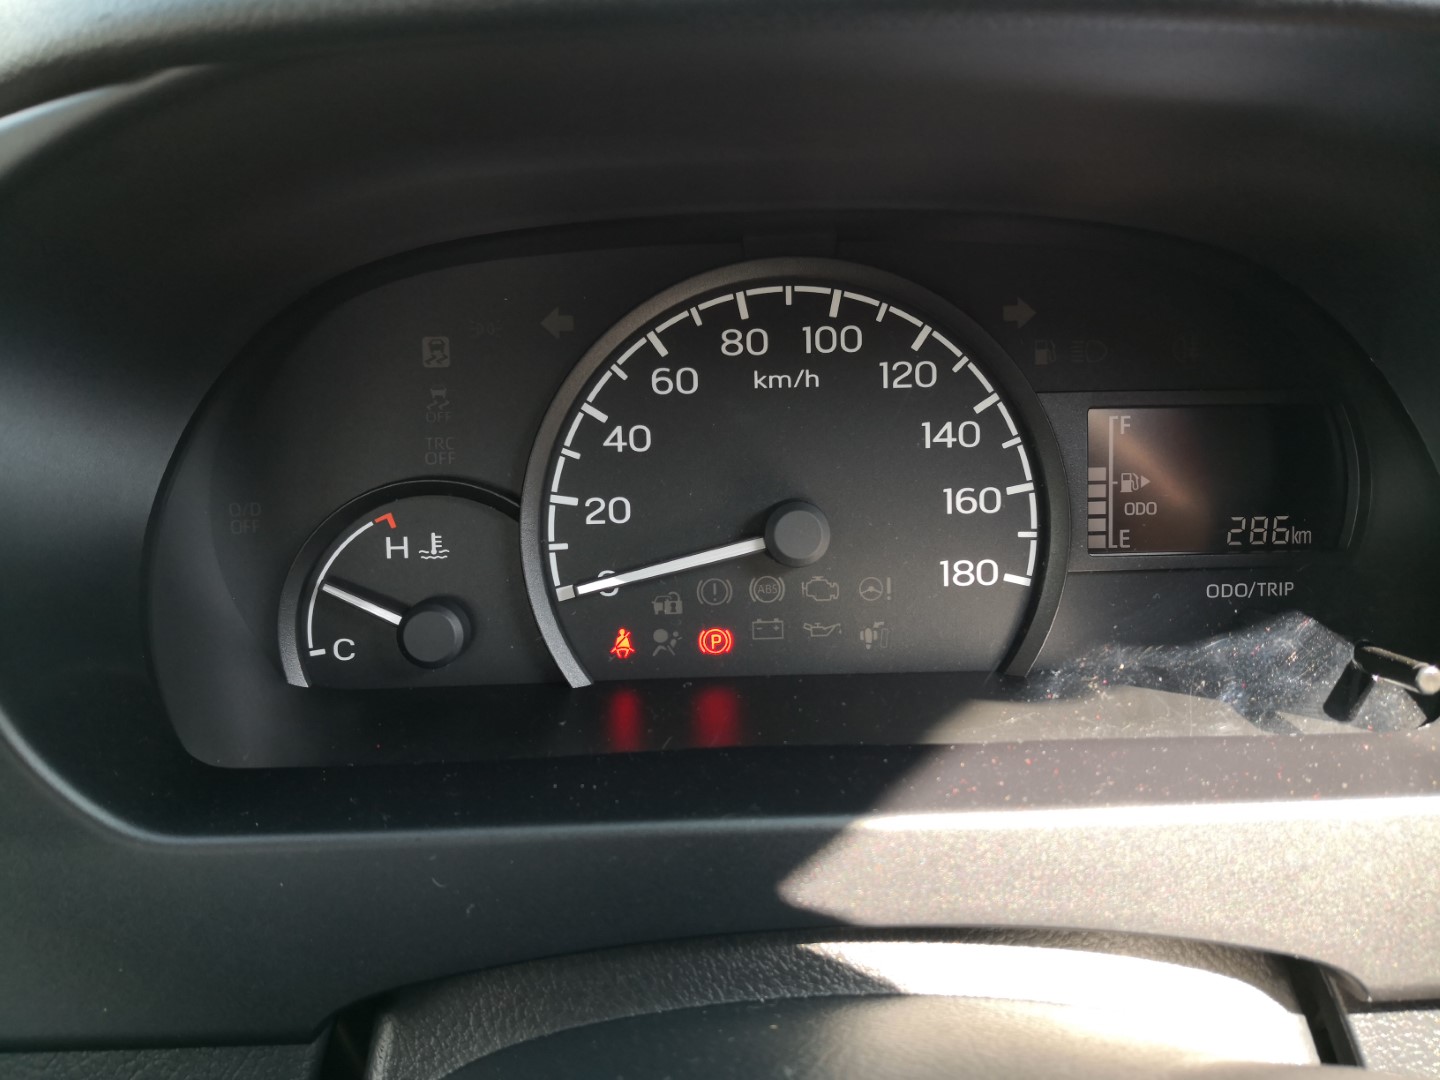 Daihatsu Gran Max Euro 4 speedometer